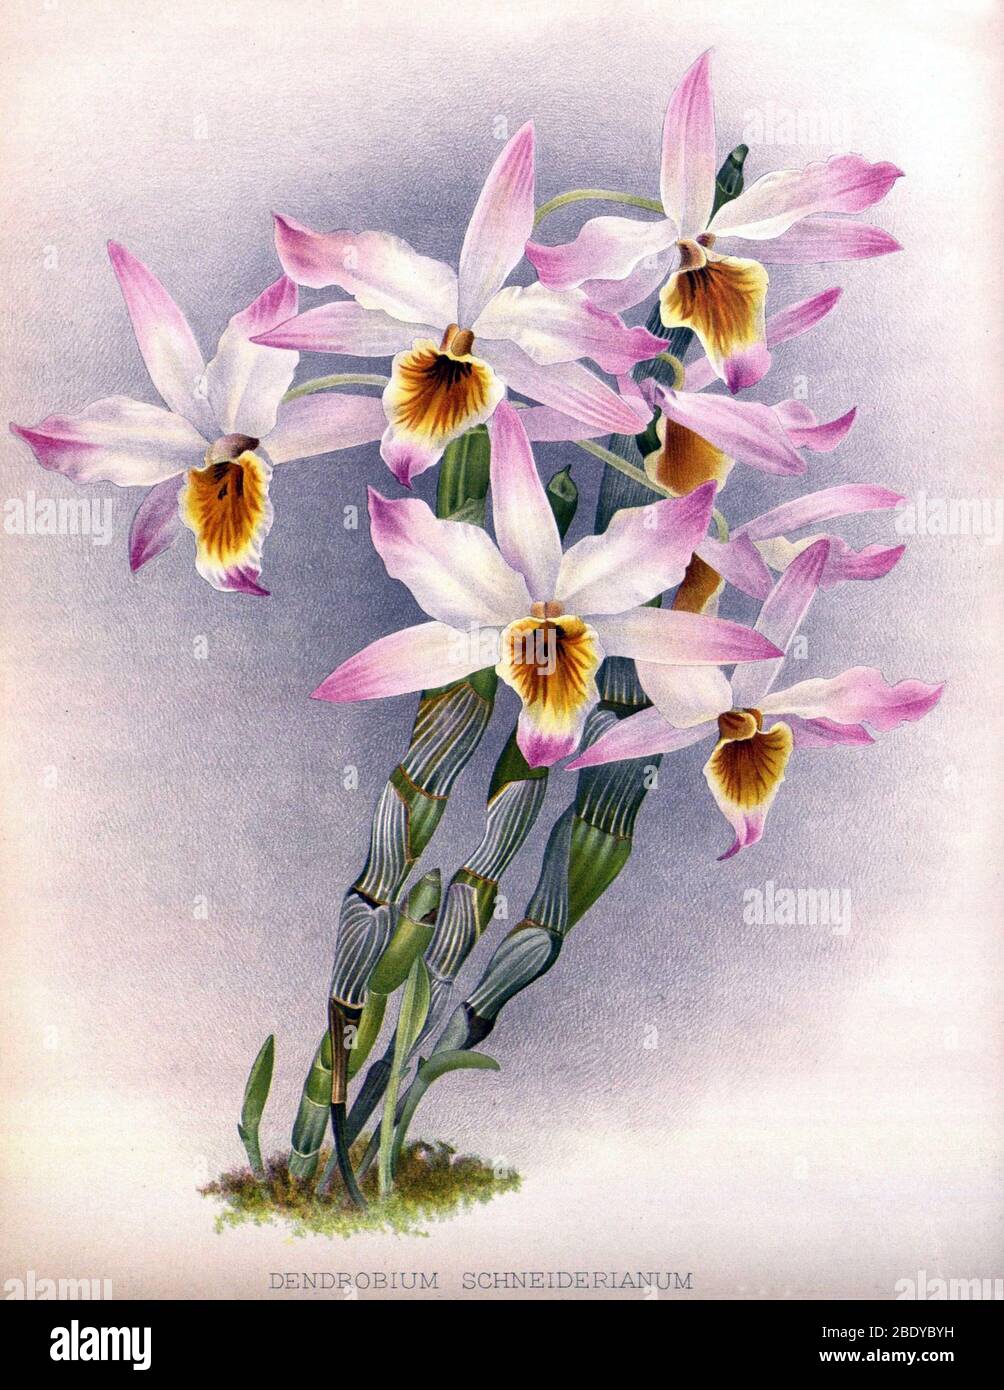 Orchid, Dendrobium schneiderianum, 1891 Stock Photo